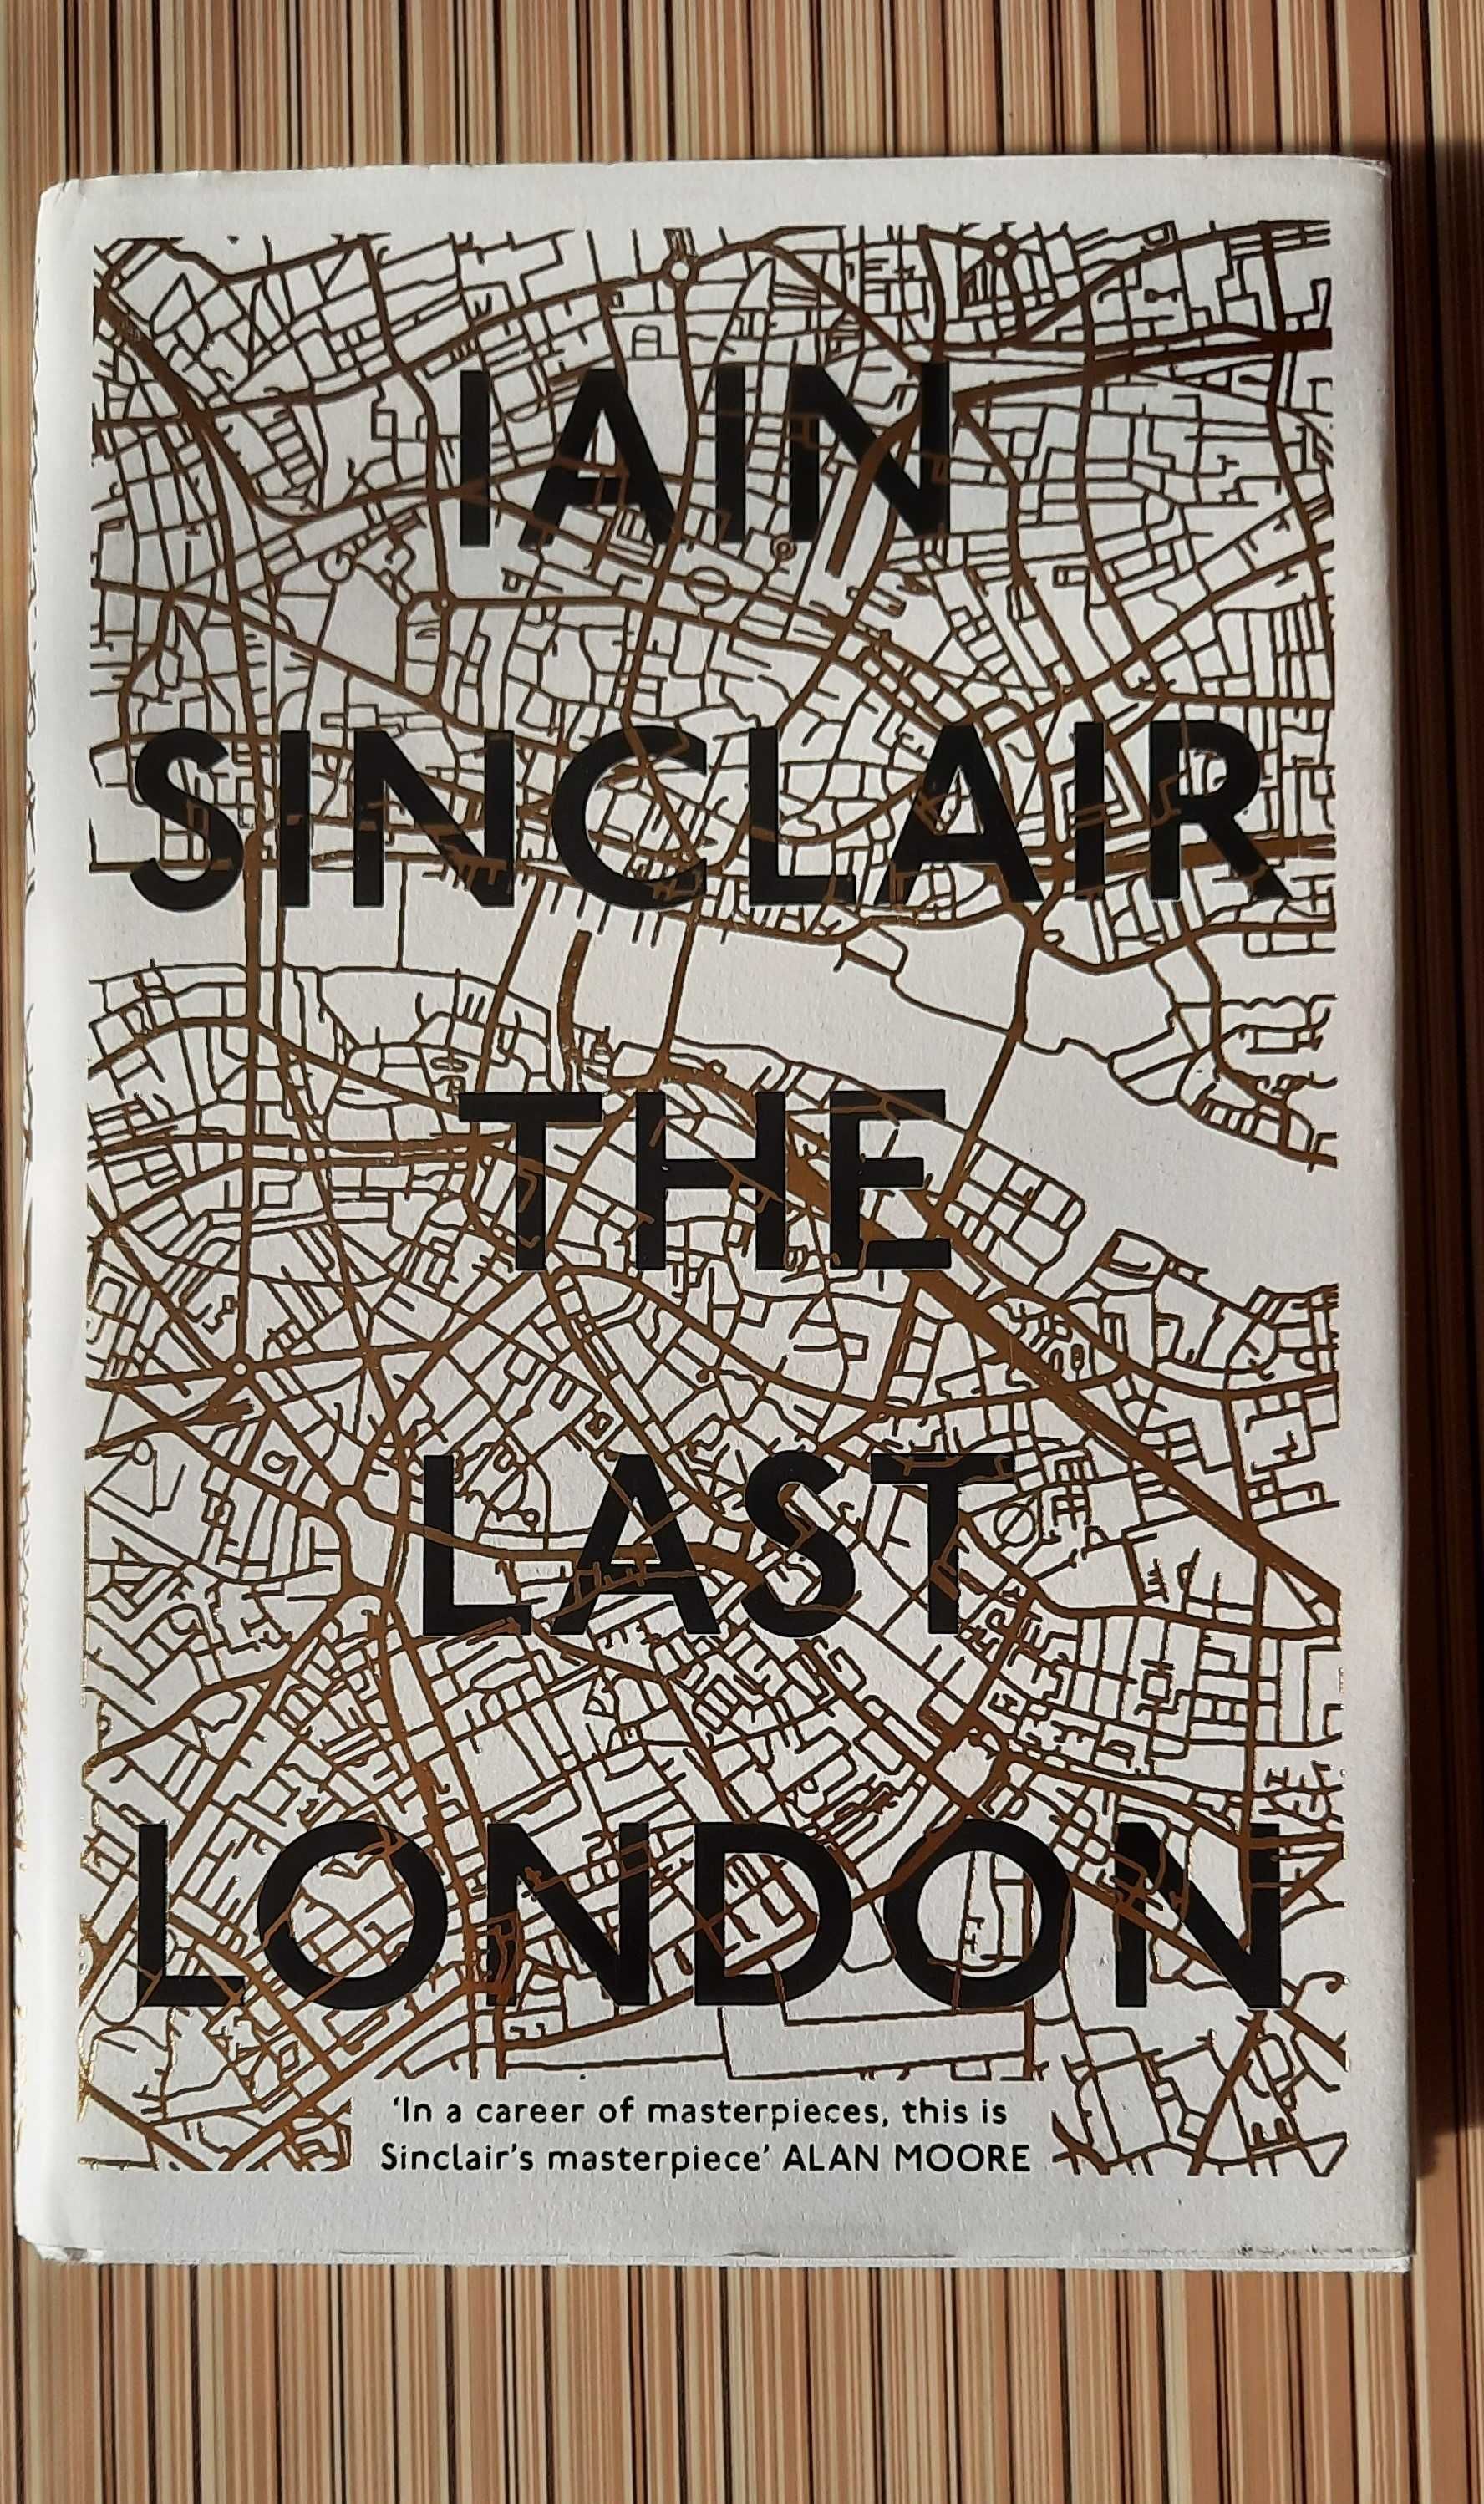 The last London - Iain Sinclair